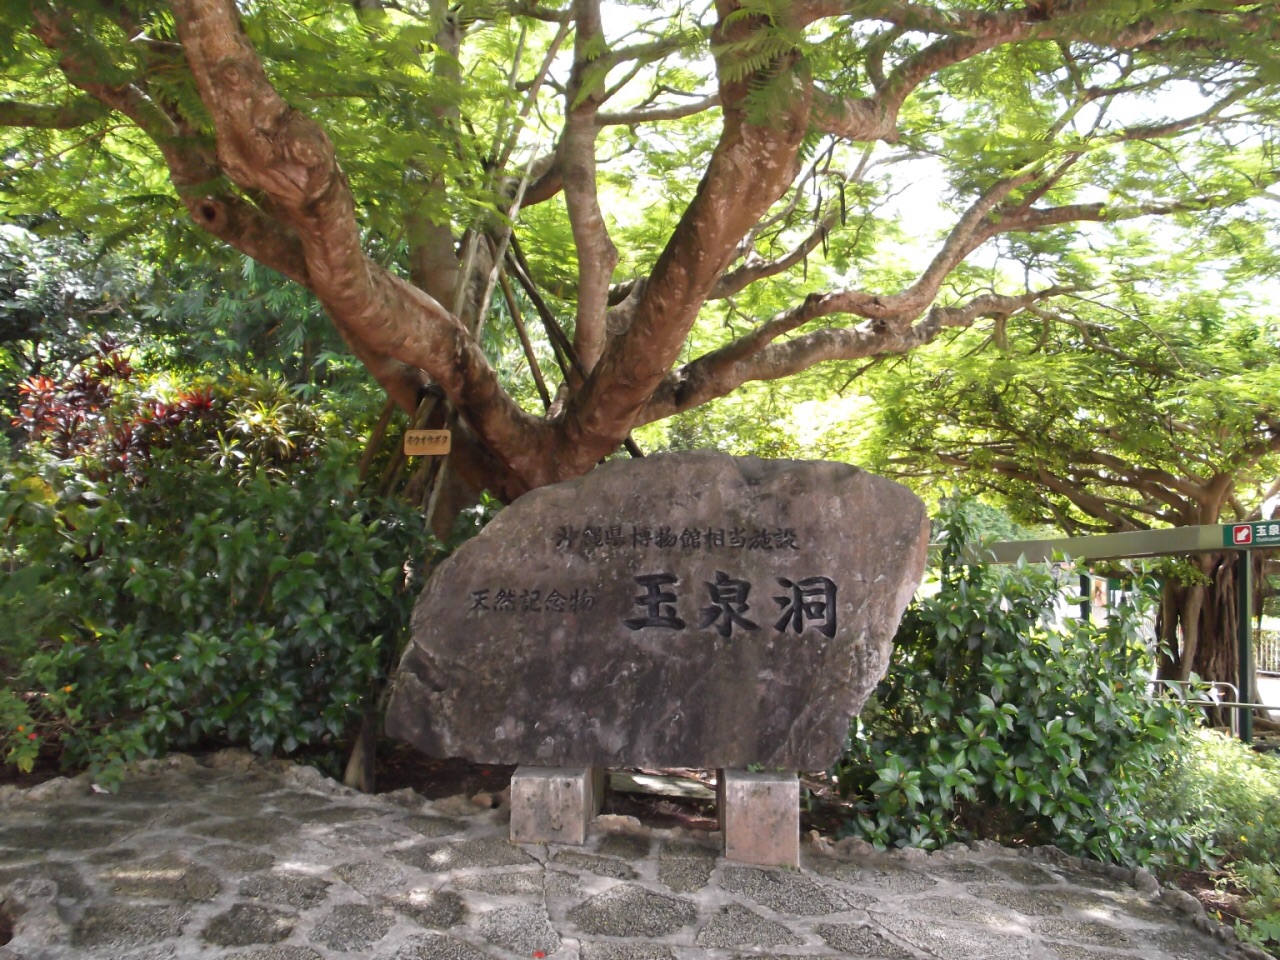 玉泉洞 玉泉洞，喀斯特岩溶地貌洞穴，在冲绳岛算是比较稀有的景观。 洞穴外面，通过园林化设计，完全是一